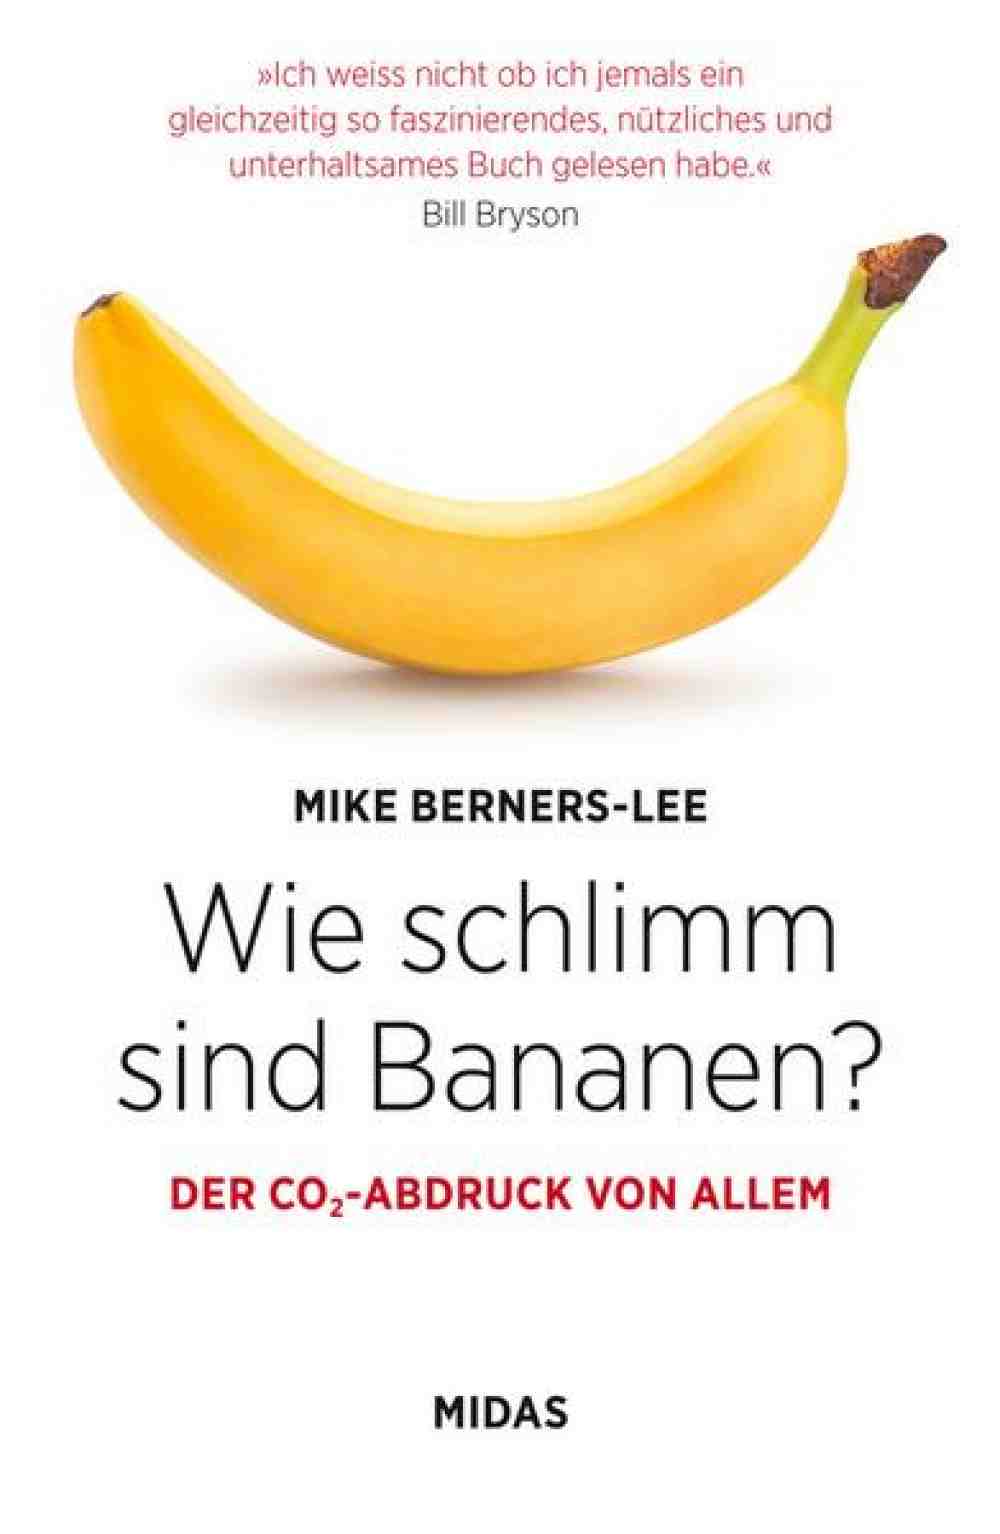 Anzeige: Lesetipps für Gütersloh: Mike Berners-Lee, »Wie schlimm sind Bananen?«